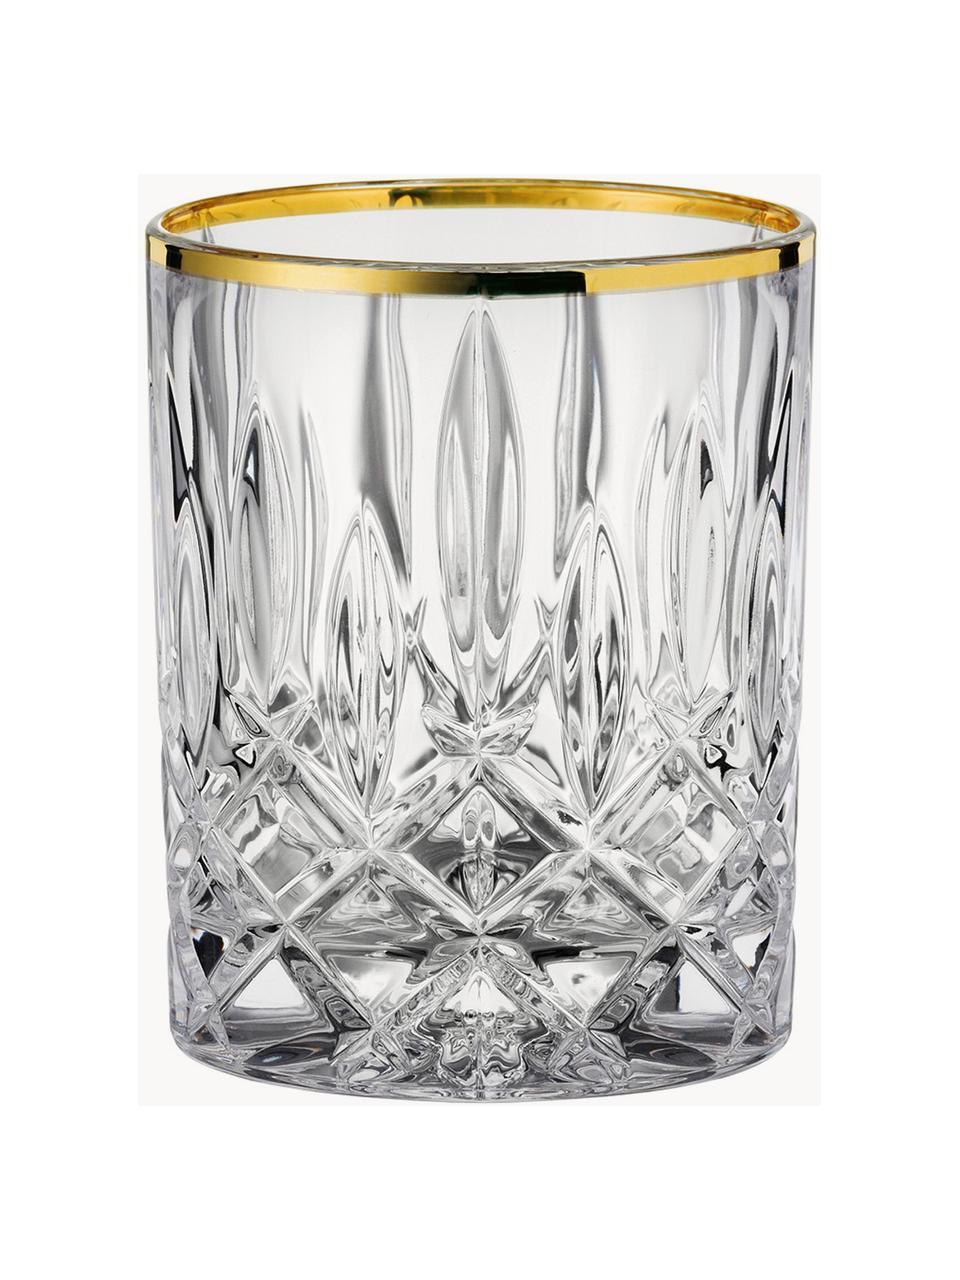 Kristall-Whiskygläser Noblesse, 2 Stück, Kristallglas, Transparent, Goldfarben, Ø 8 x H 10 cm, 300 ml